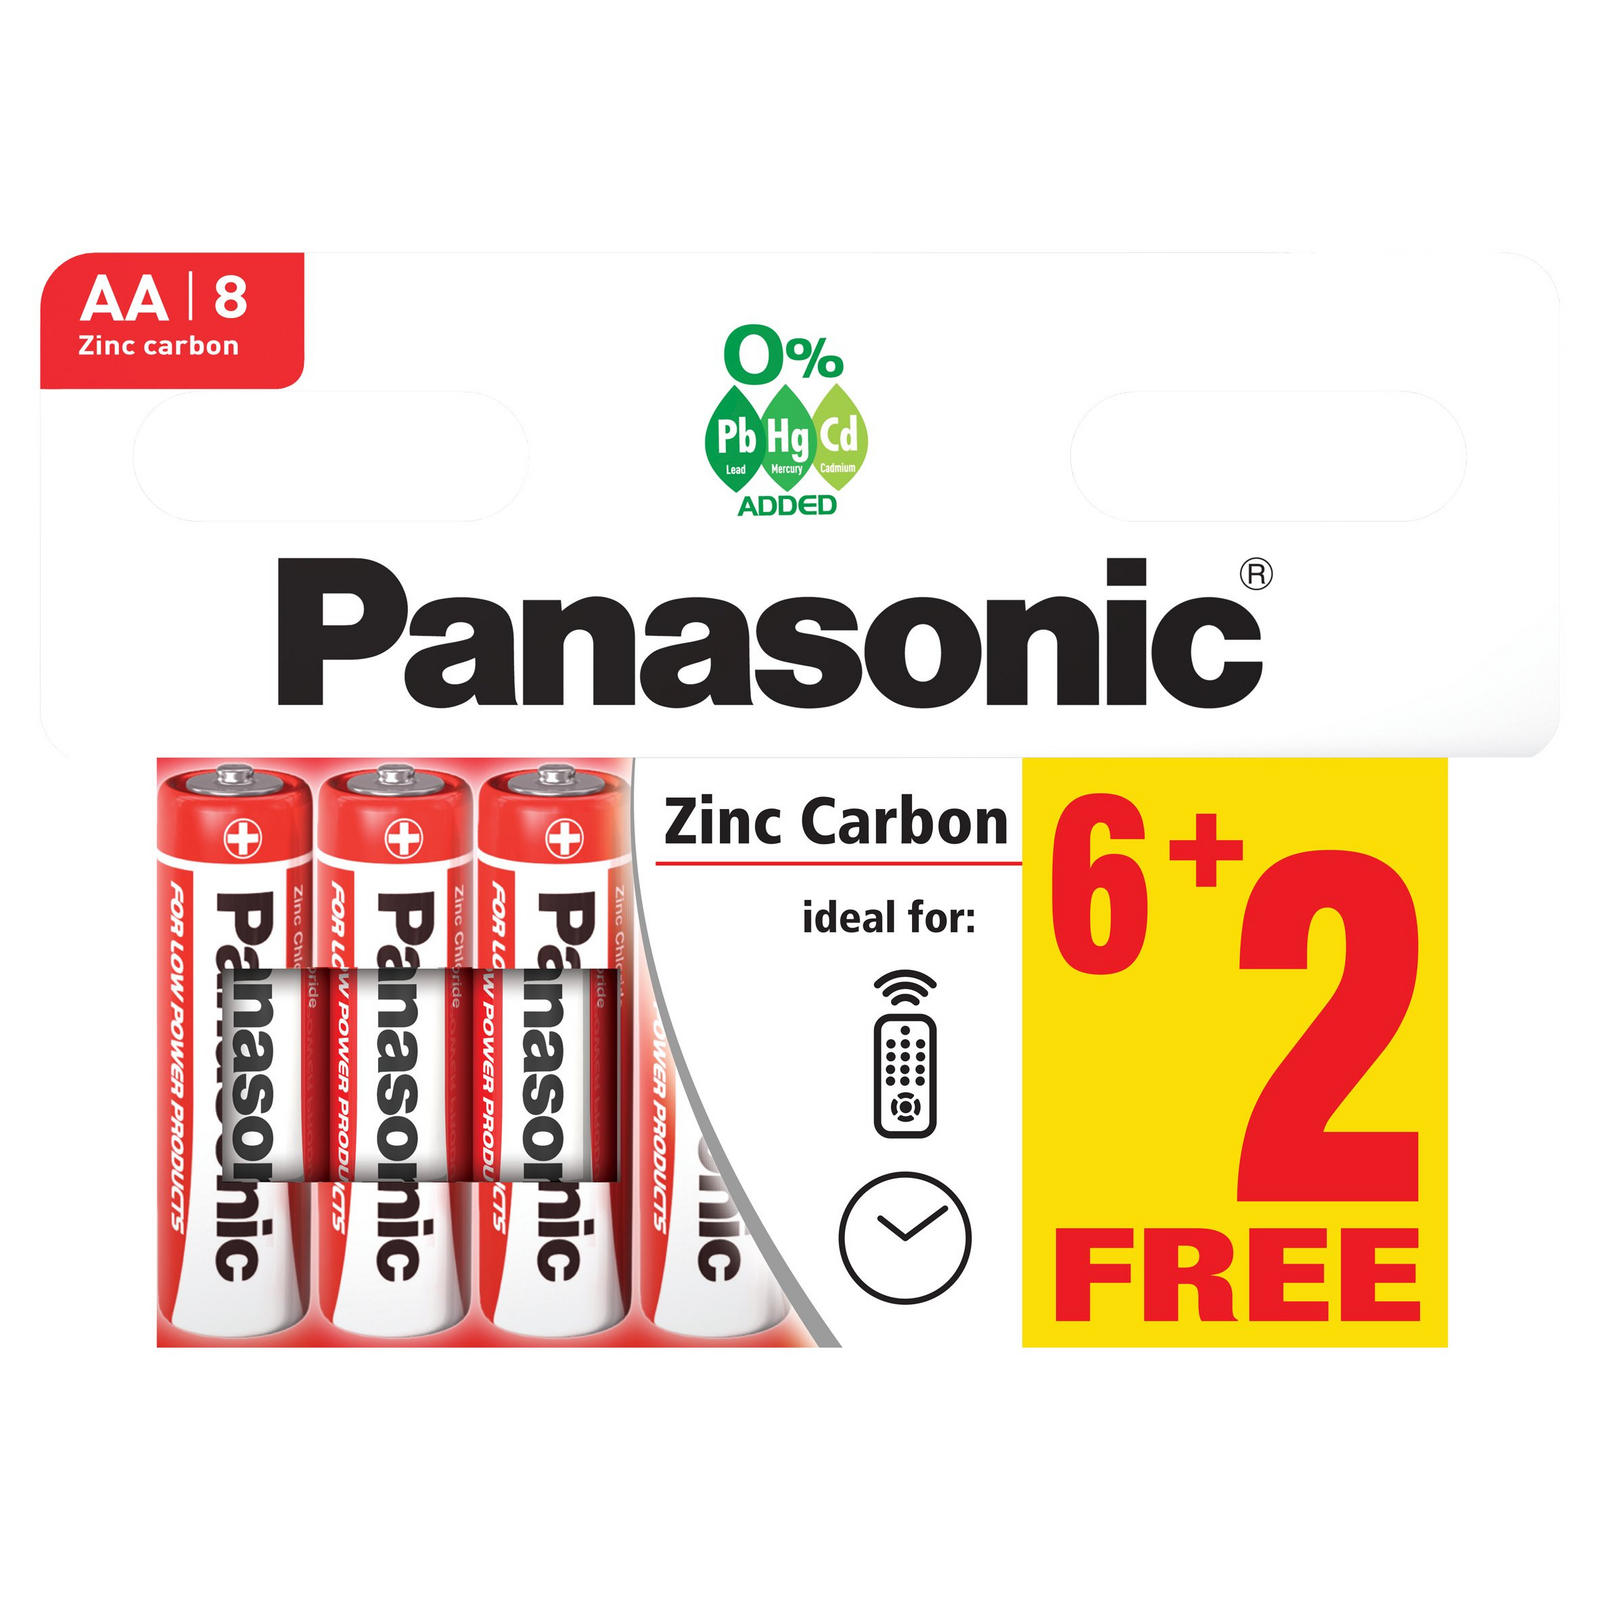 Panasonic Zinc Carbon AA